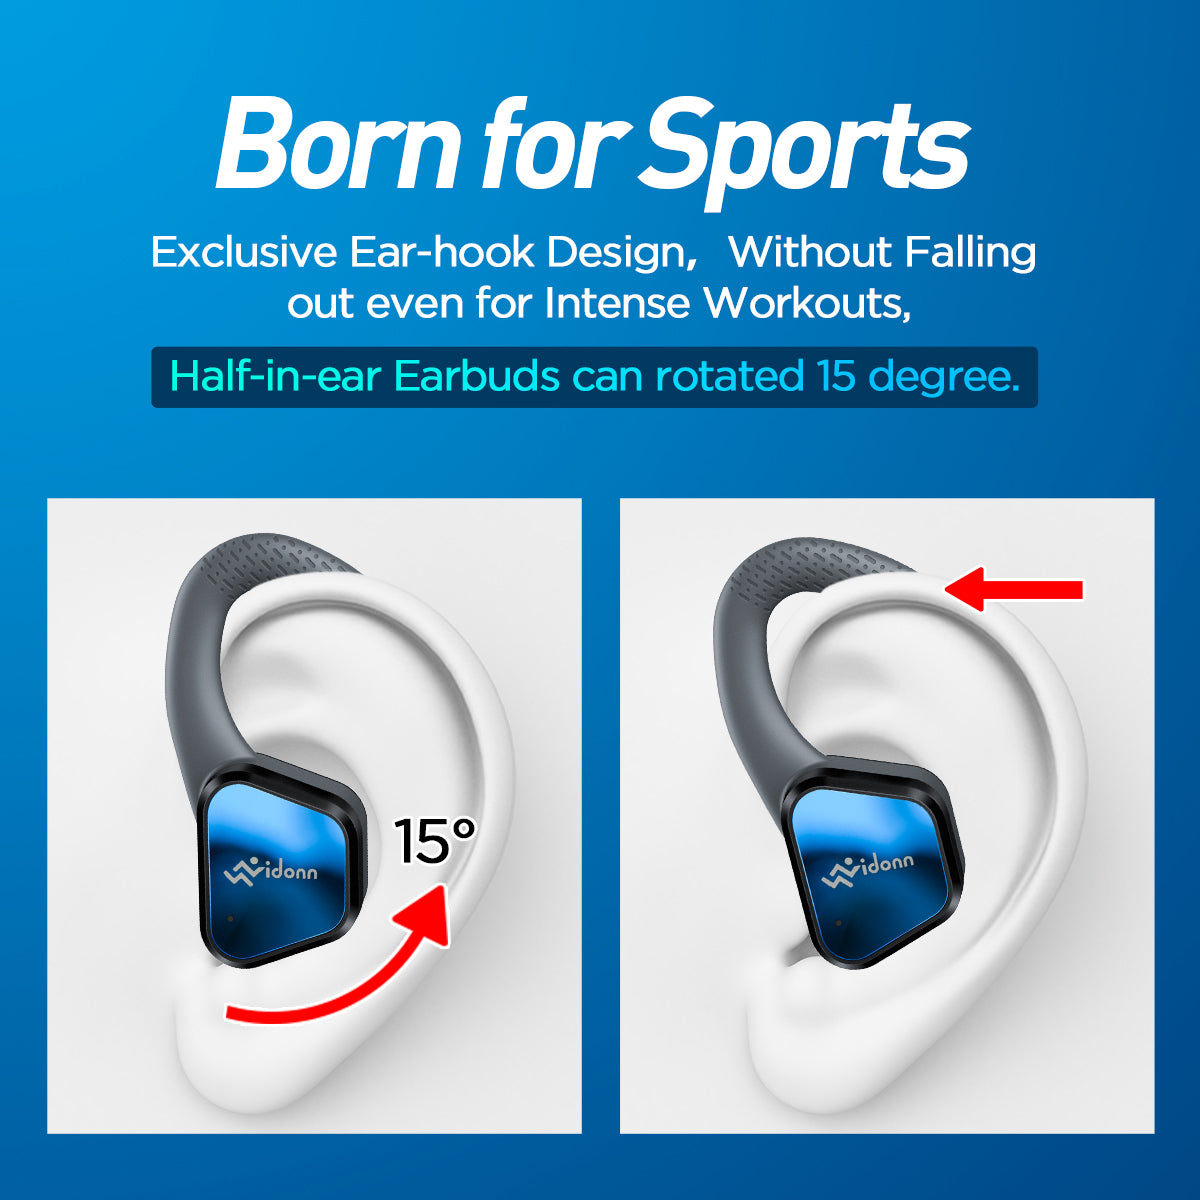 Vidonn T1 Sport wireless headphone True Wireless Earbuds Sport Earbuds